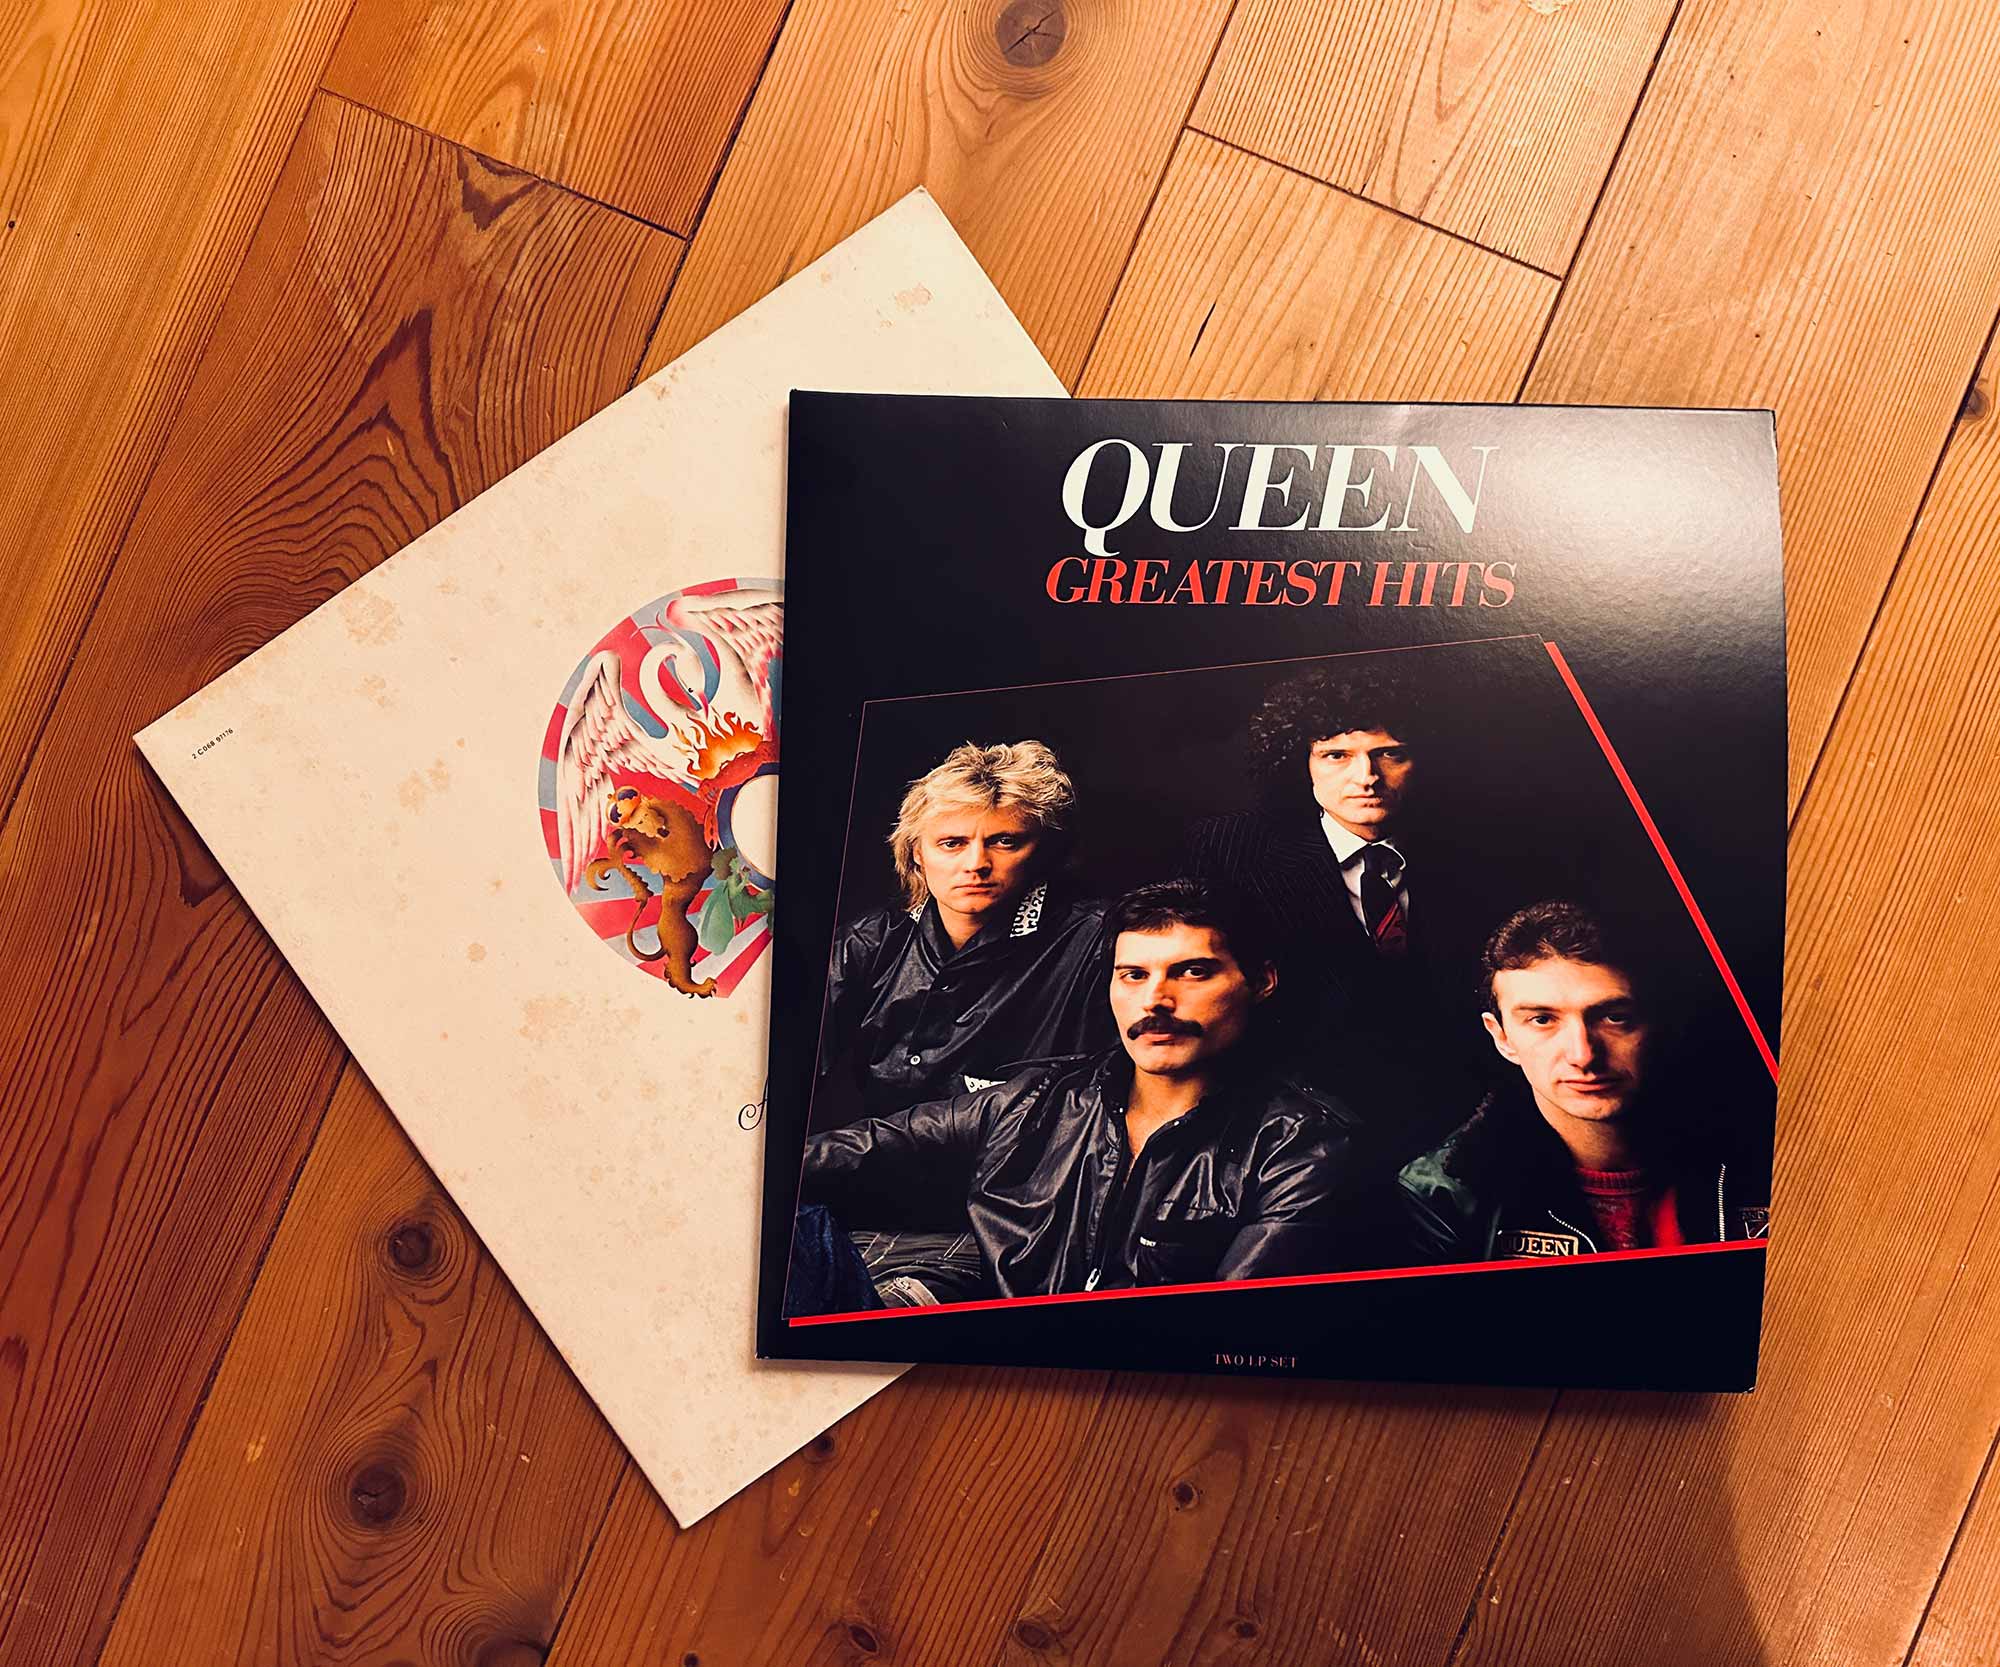 Das Bild zeigt die Cover von zwei der wichtigsten Alben Freddie Mercurys: A Night at the Opera und Greatest Hits